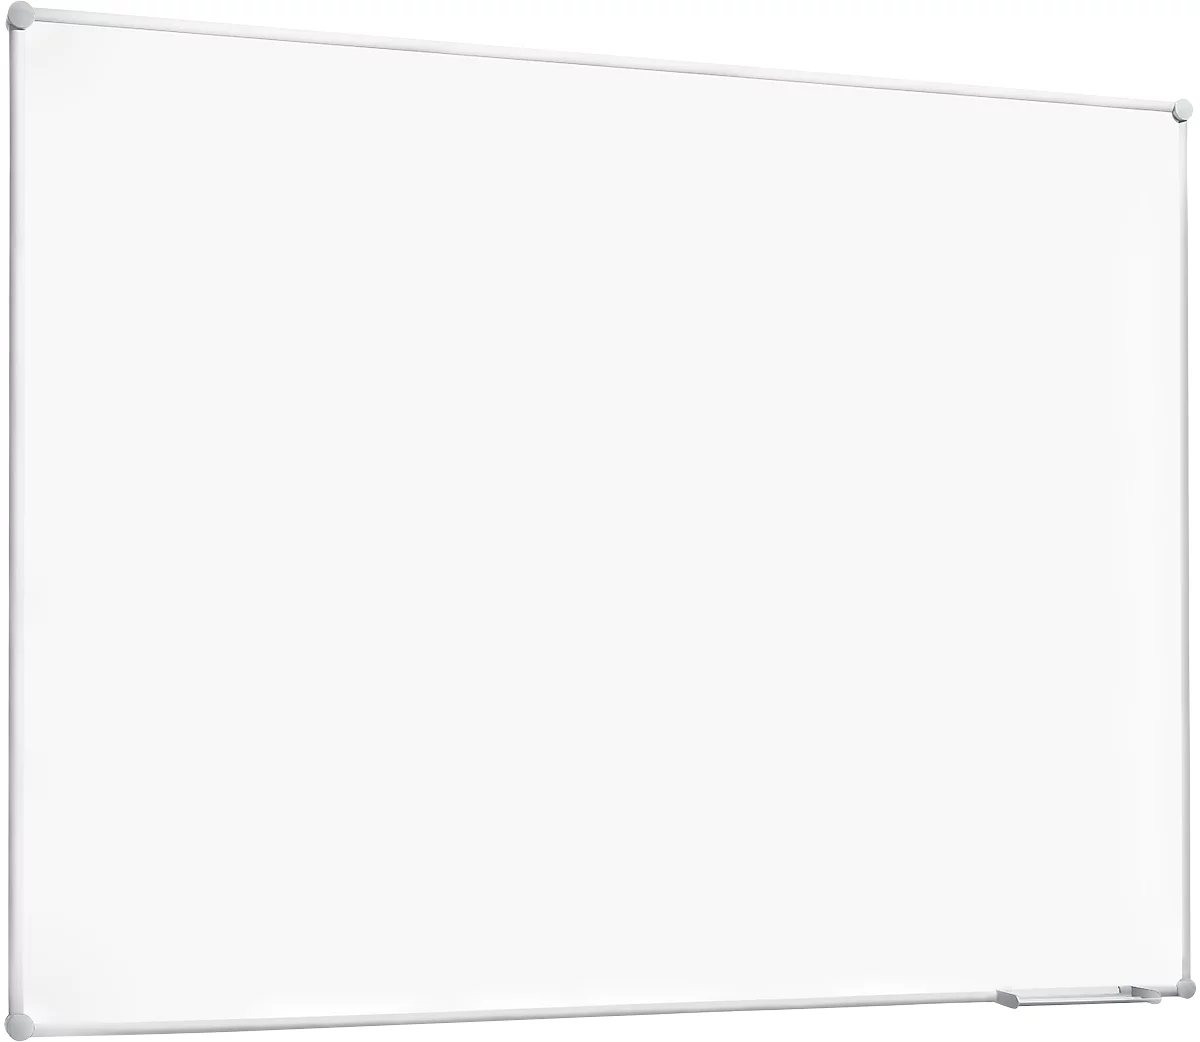 Pizarra blanca 2000 MAULpro, revestida de plástico blanco, marco de aluminio plateado, 1200 x 1800 mm